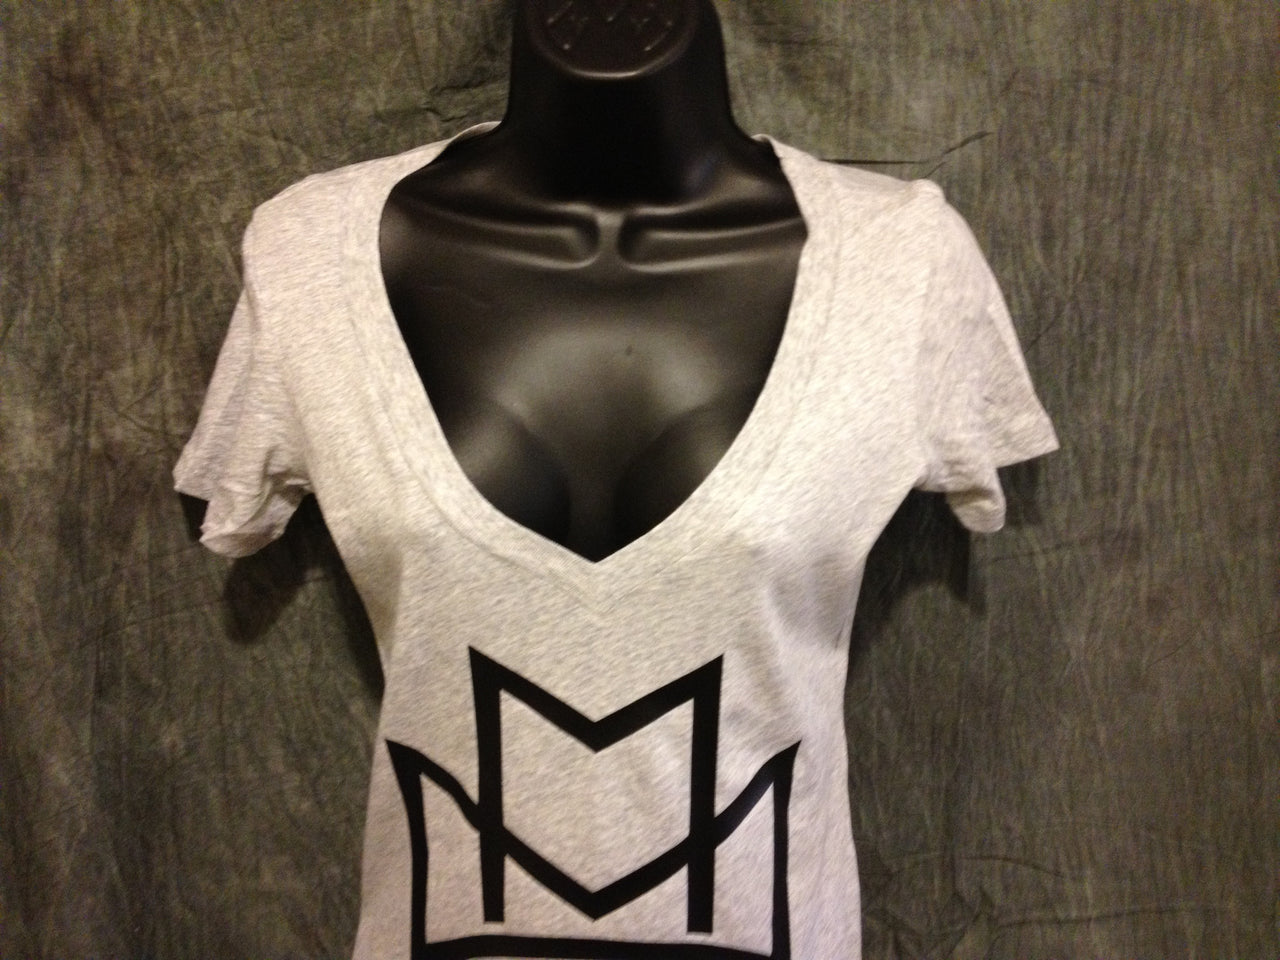 Maybach Music Group Girls Tshirt: Black Print on Heather Grey Womens V-Neck Tshirt - TshirtNow.net - 4